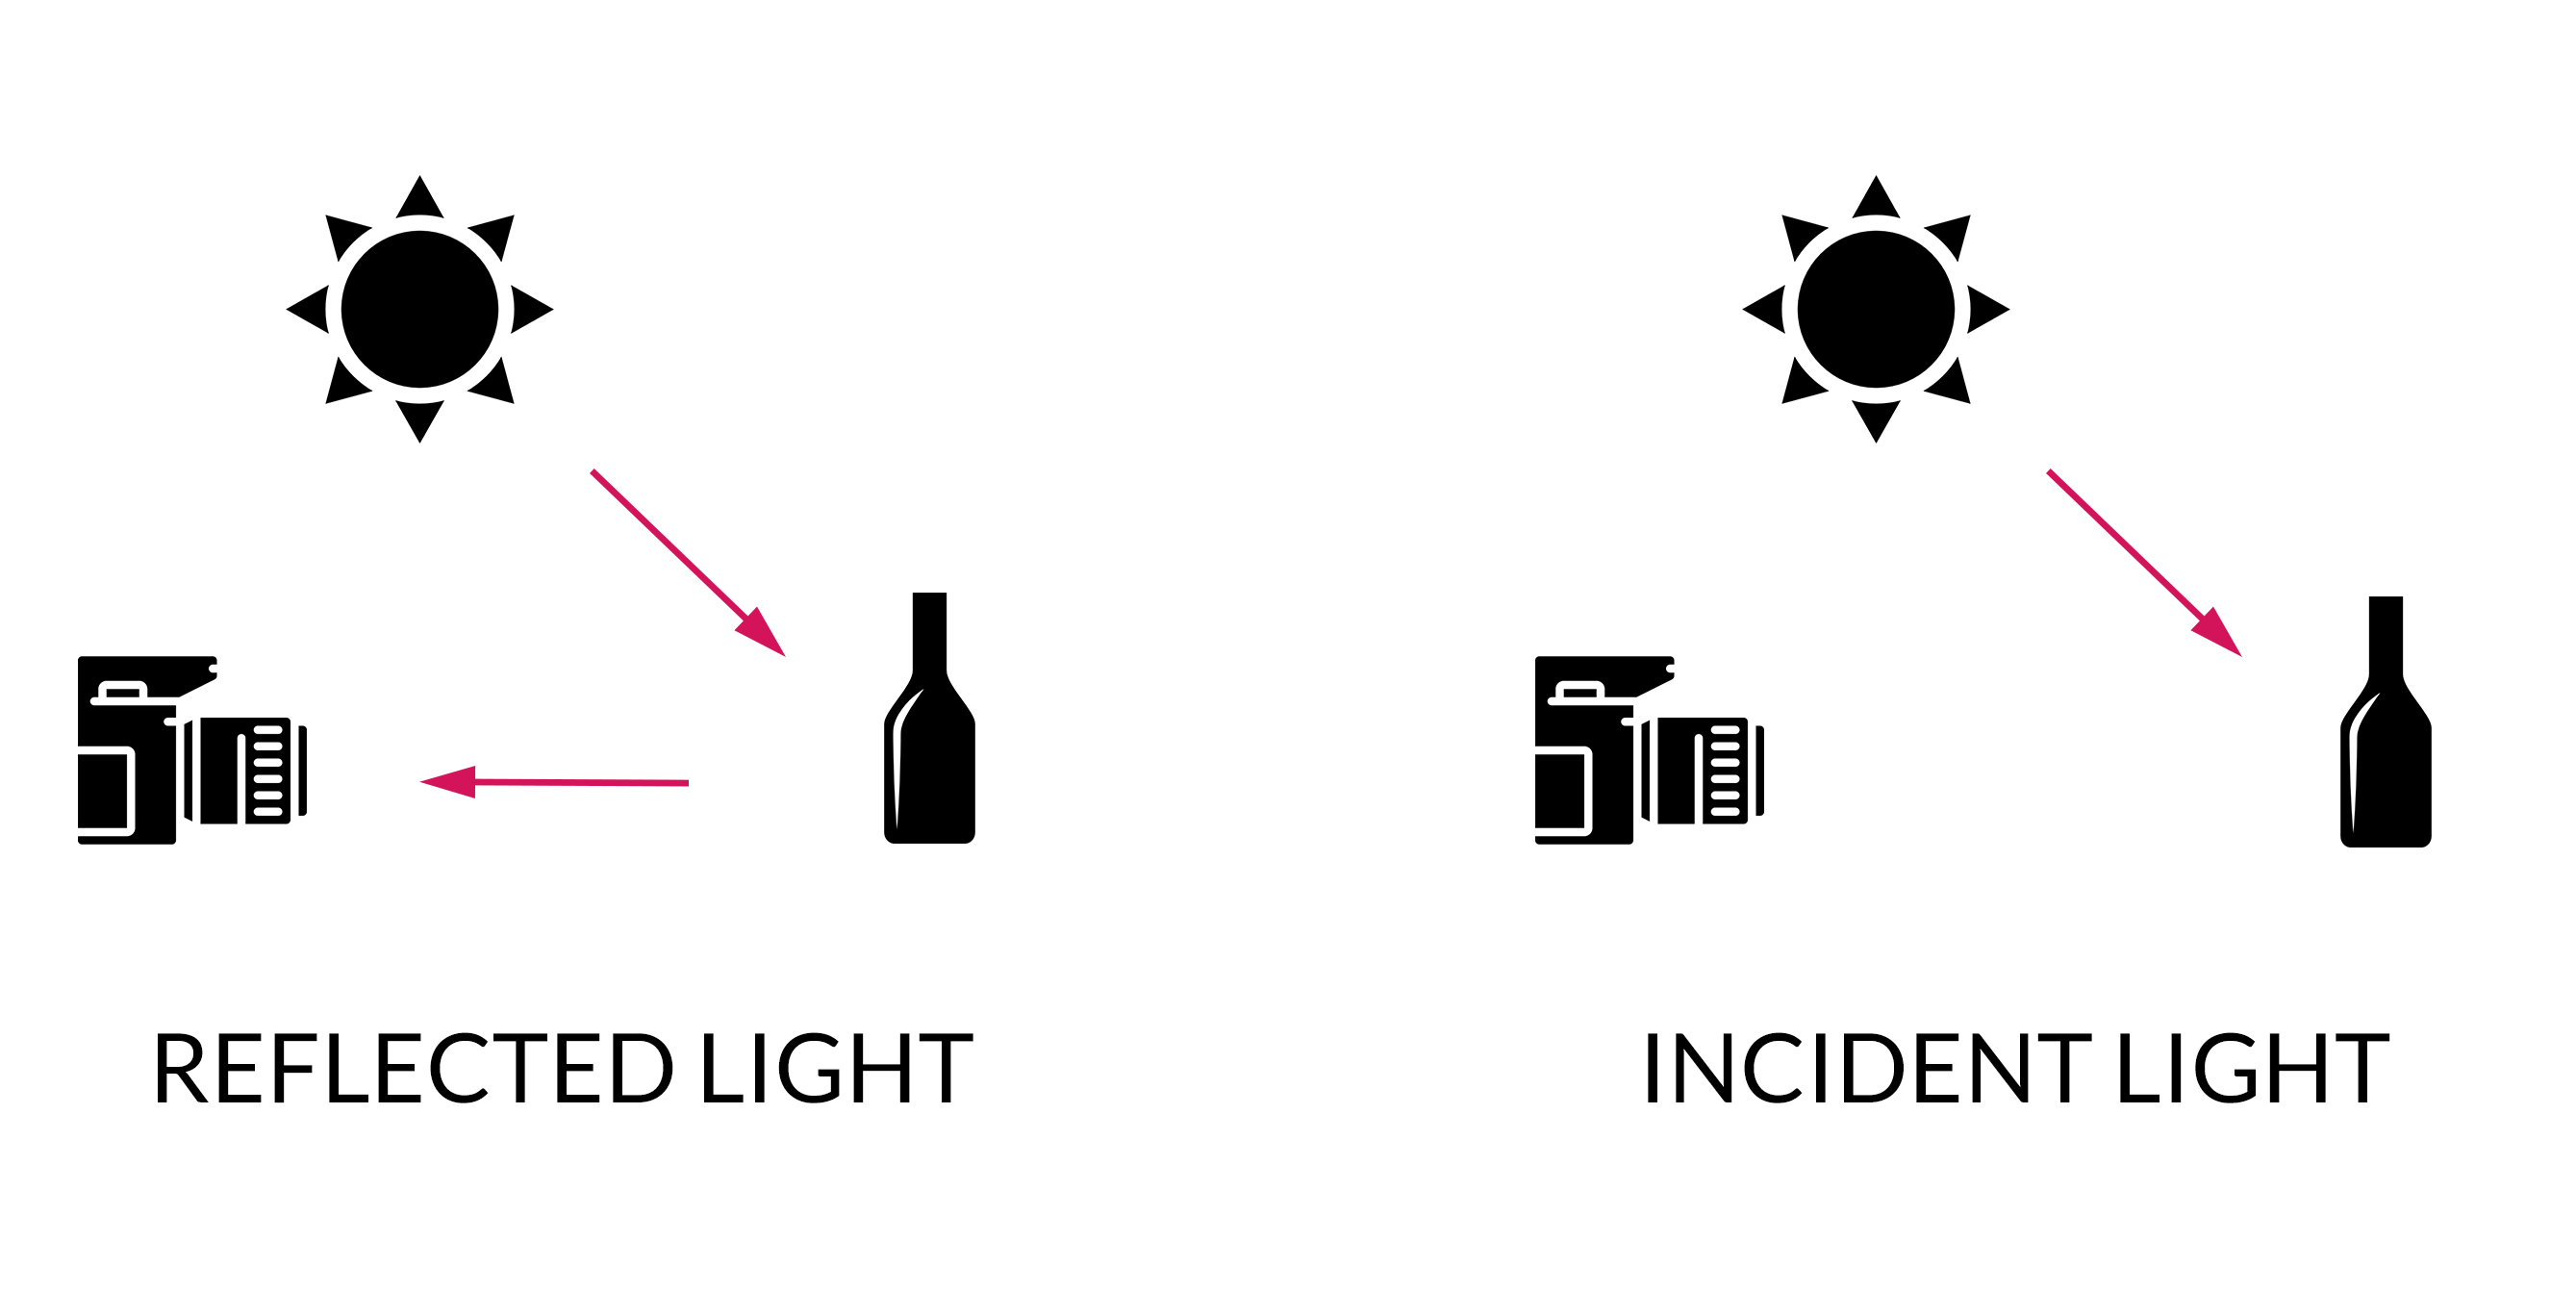 comparação da luz incidente com a luz refletida